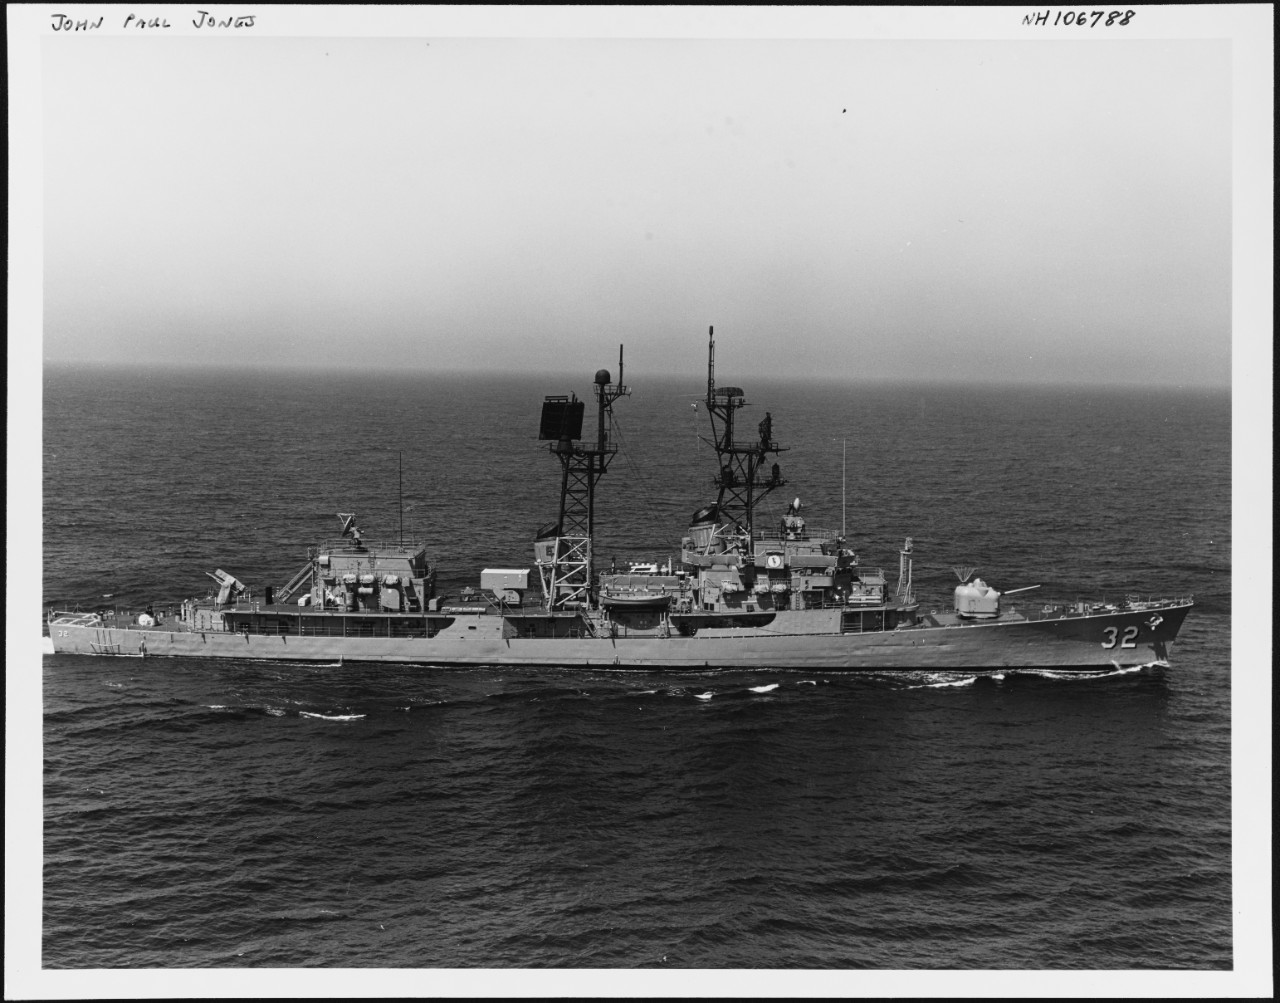 Photo # NH 106788  USS John Paul Jones